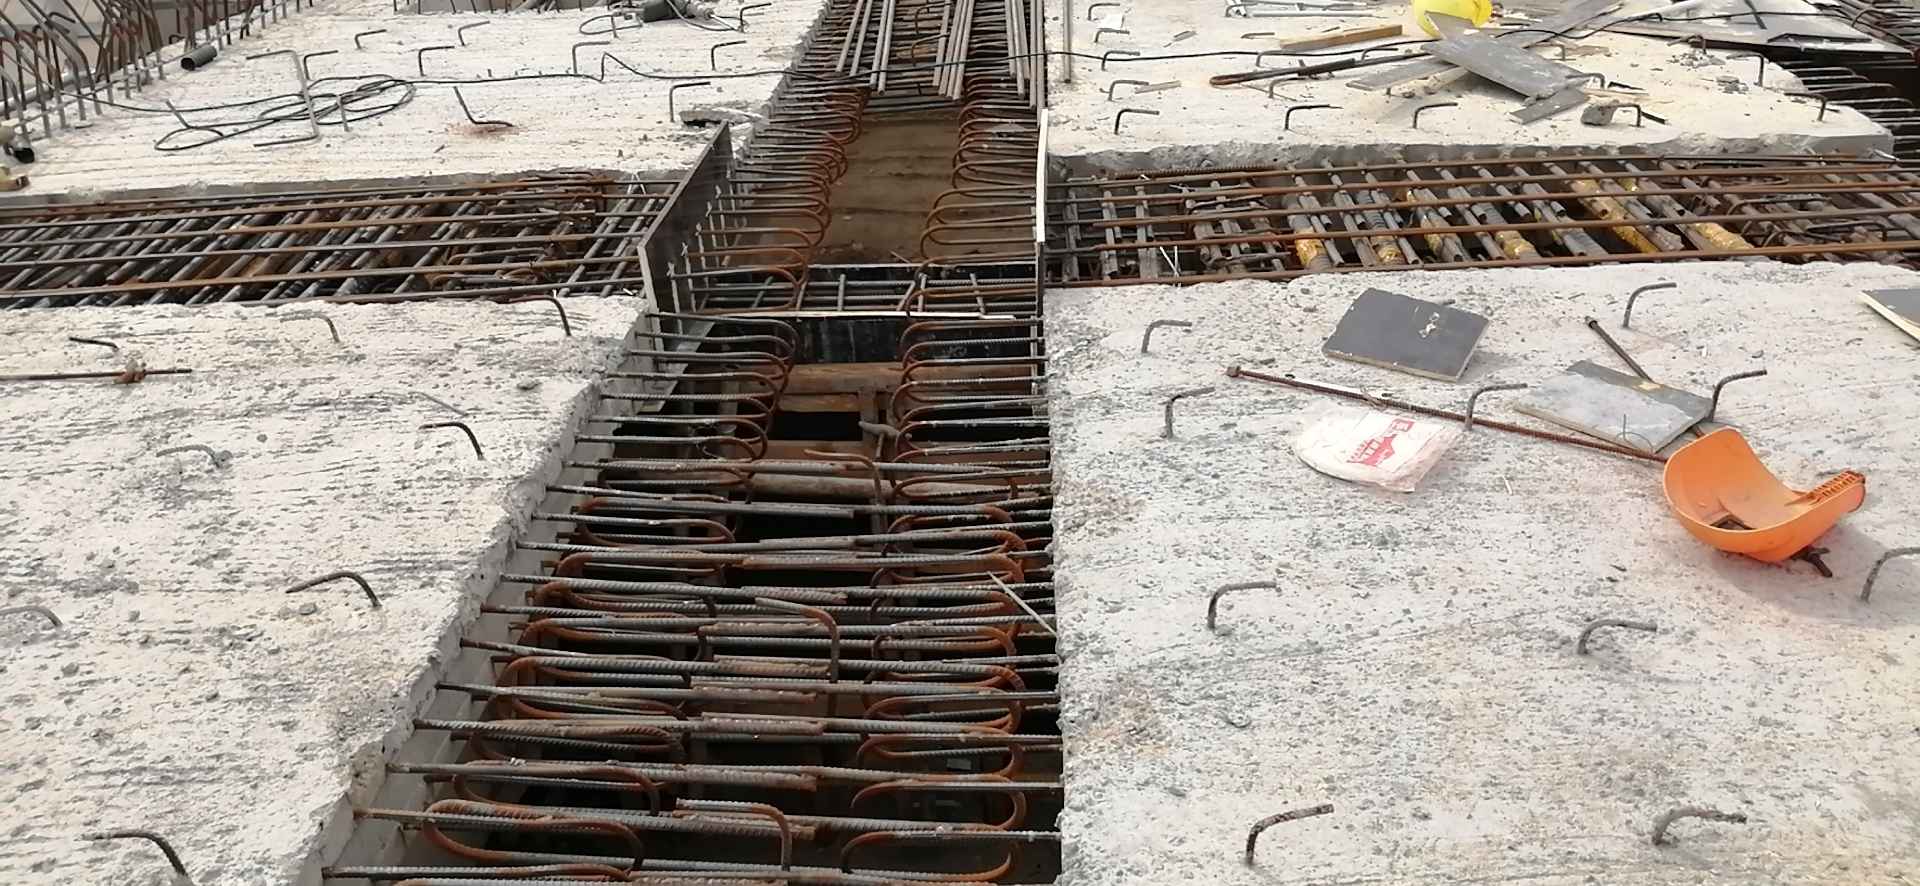 项目描述  焊工/铆工/钣金/钳工  桥梁  桥面系湿接缝焊接,中横梁焊接